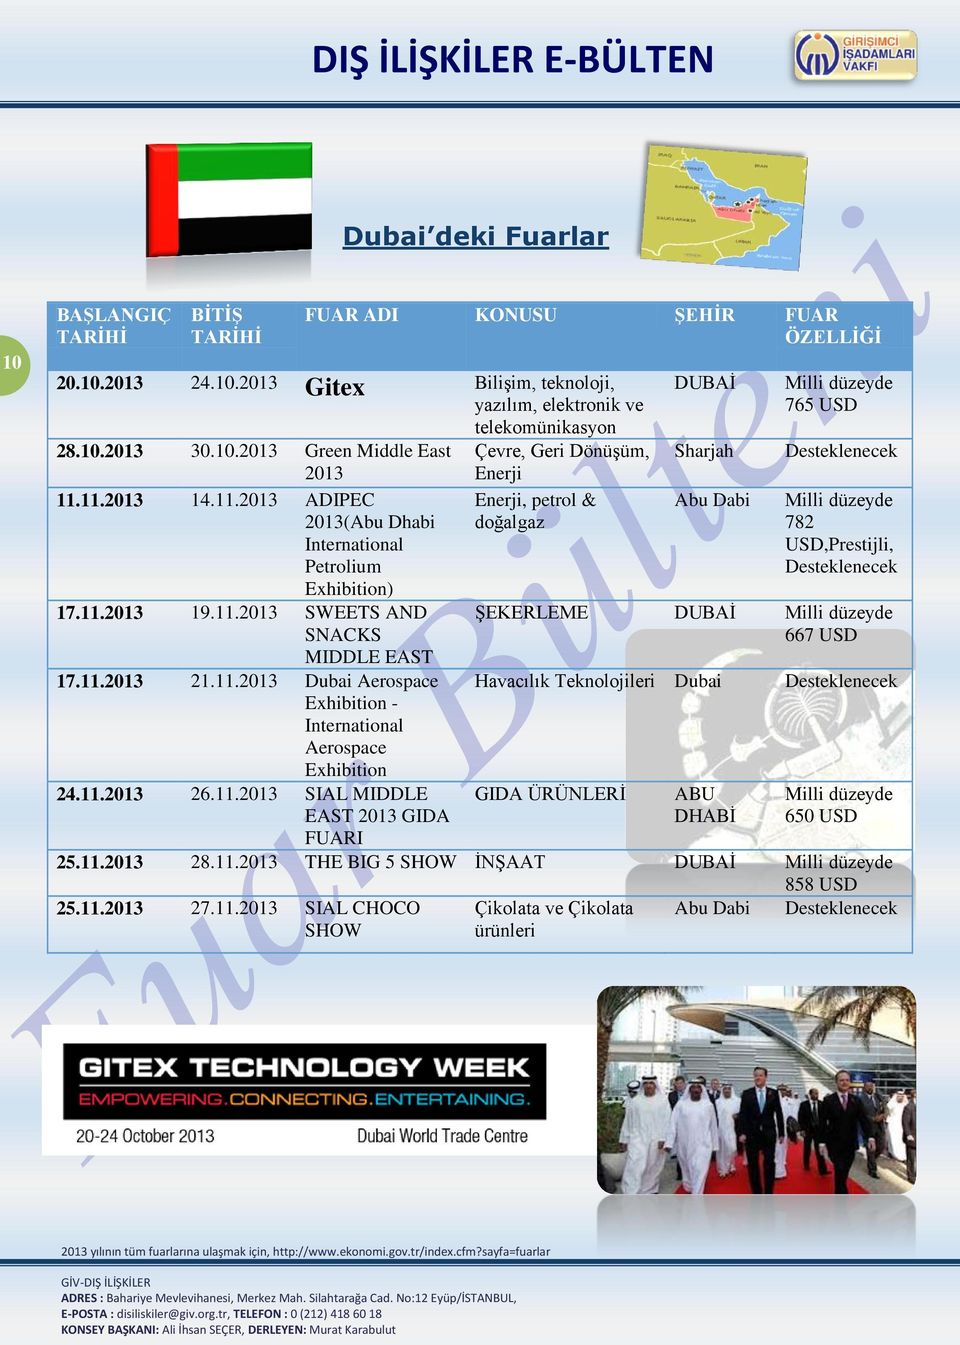 SIAL MIDDLE EAST 2013 GIDA FUARI Enerji, petrol & doğalgaz DUBAİ Sharjah Abu Dabi Milli düzeyde 765 USD Milli düzeyde 782 USD,Prestijli, ŞEKERLEME DUBAİ Milli düzeyde 667 USD Havacılık Teknolojileri